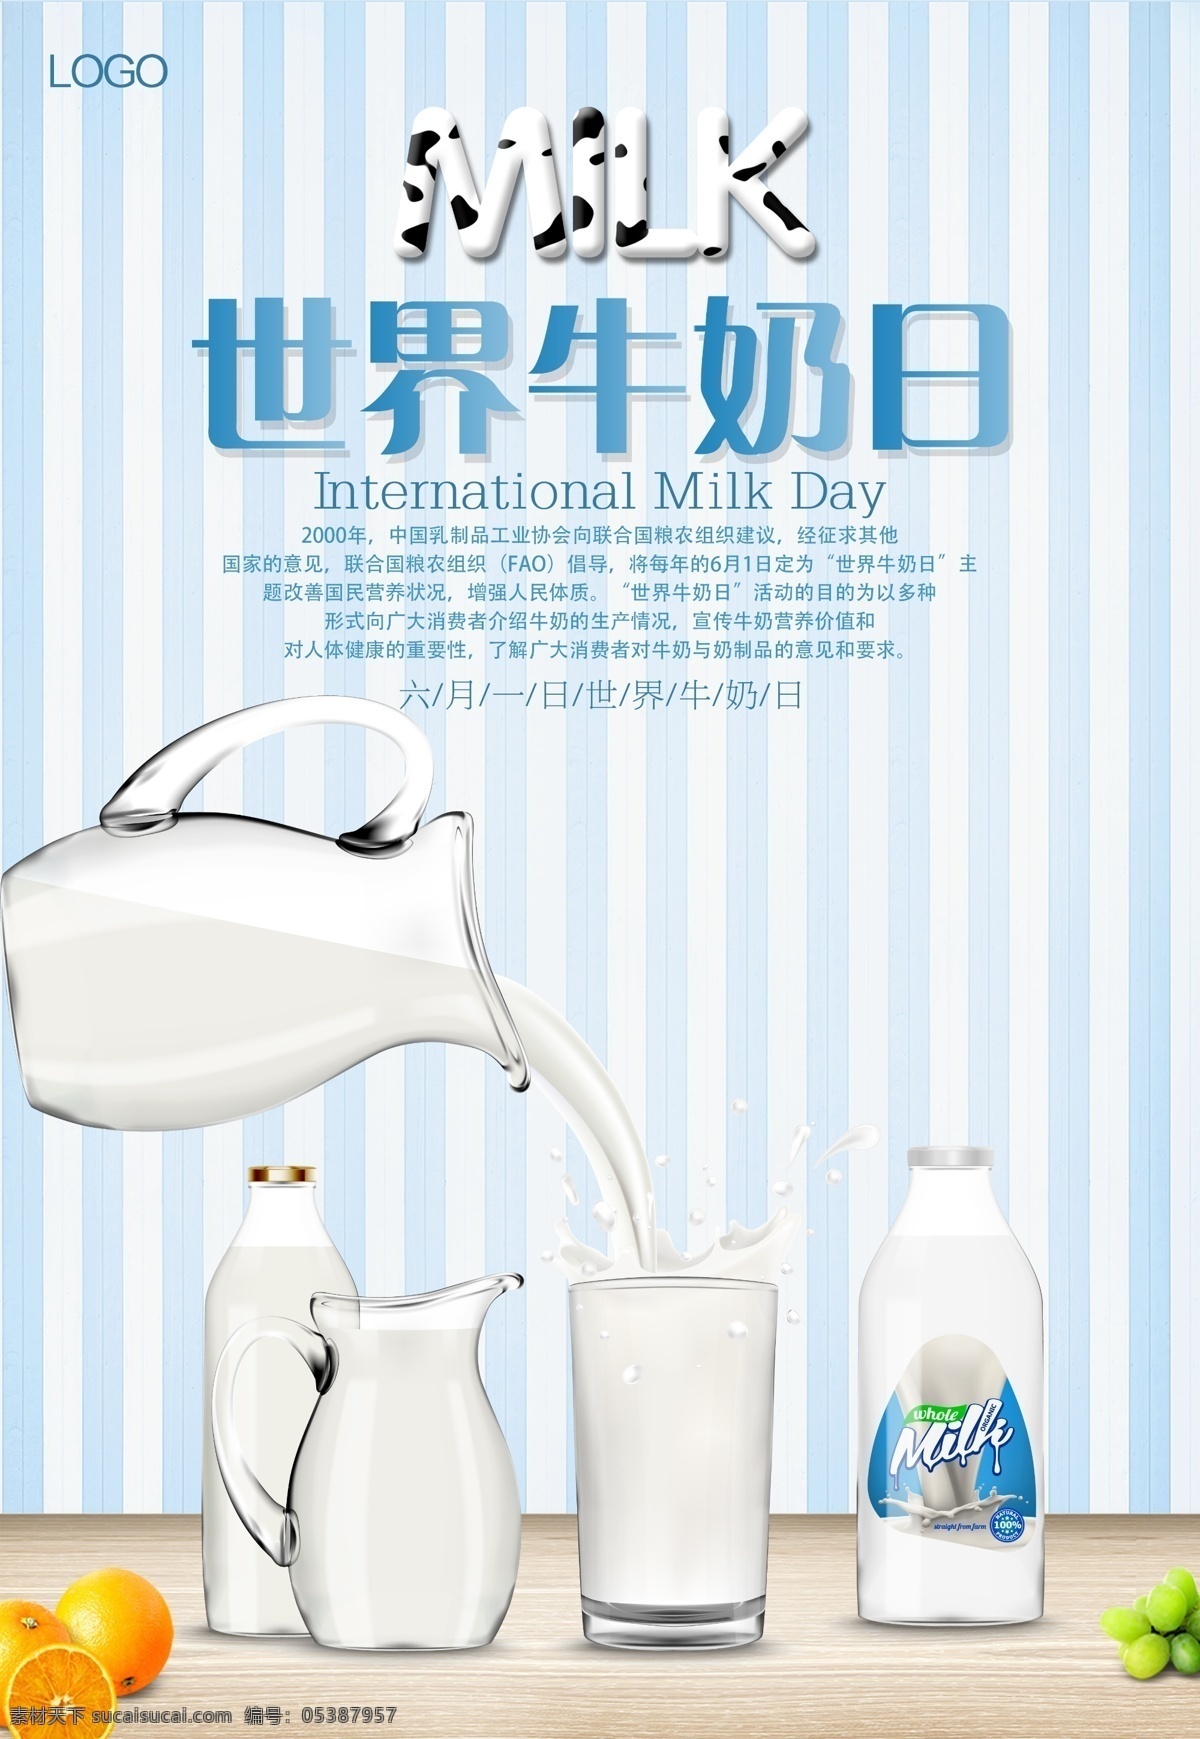 牛奶日海报 牛奶日 世界牛奶日 国际牛奶日 牛奶 早餐 奶 源文件 分层 设计素材 海报 牛奶海报